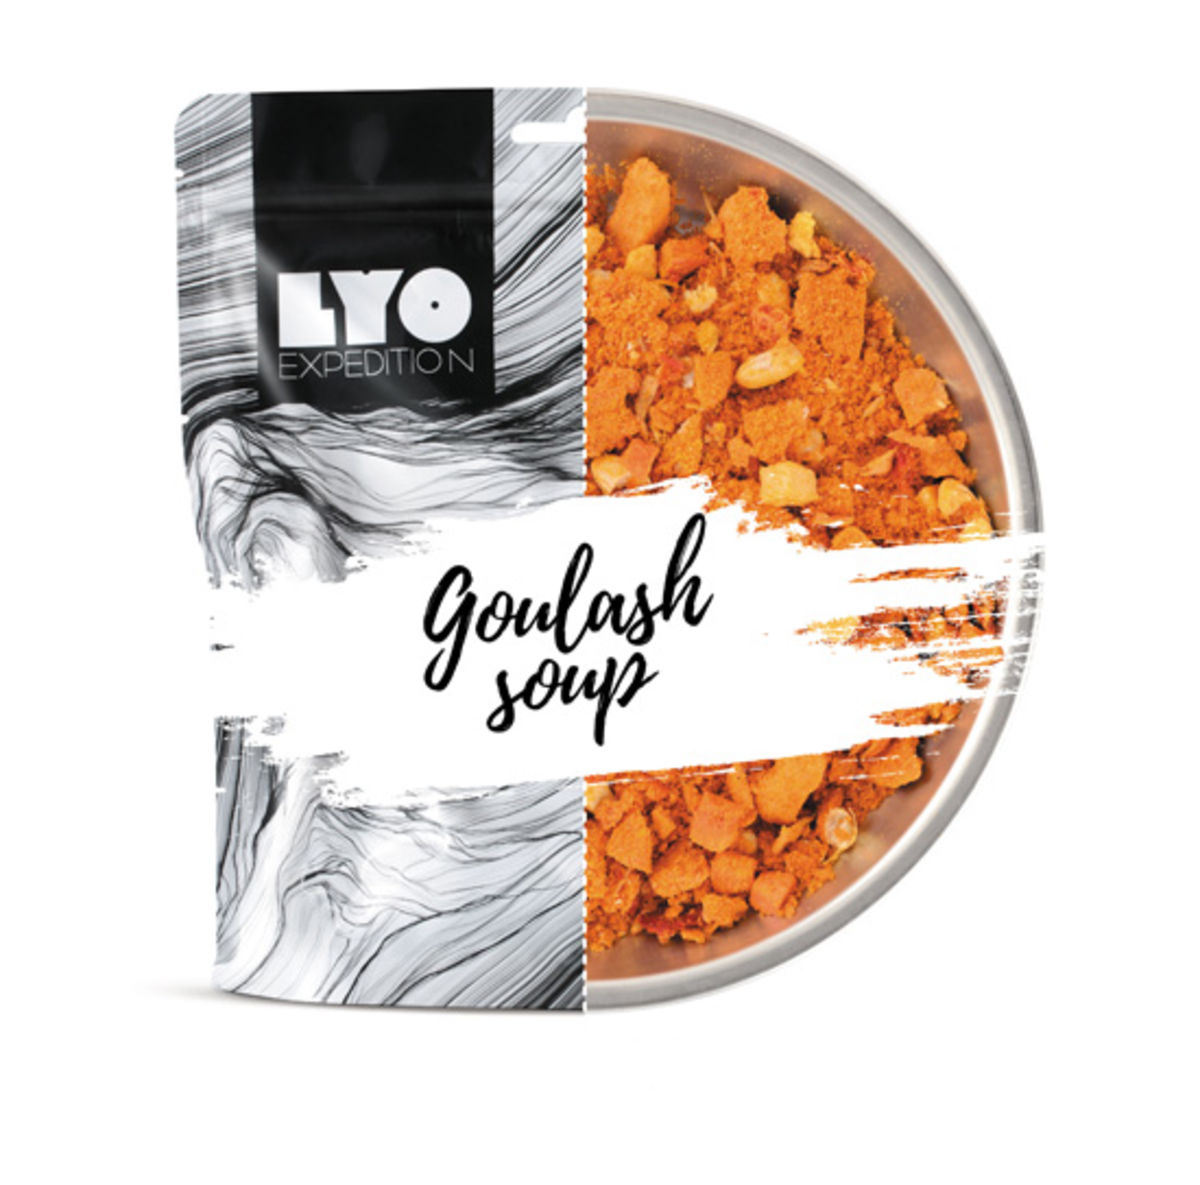 Soupe de goulash - Grand format